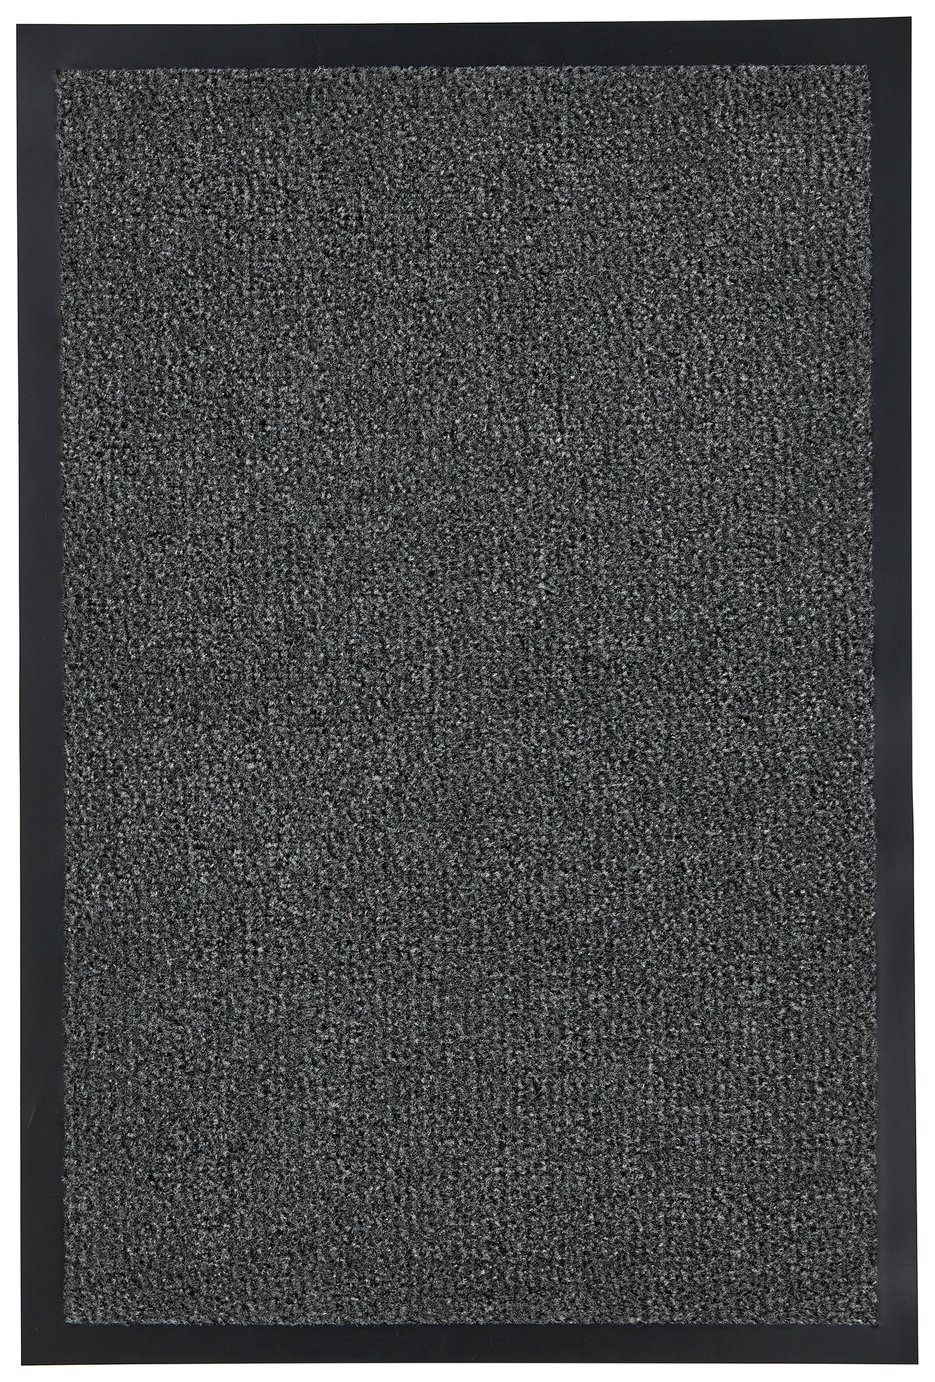 Dandyclean Barrier Mat - Charcoal - 90x150cm